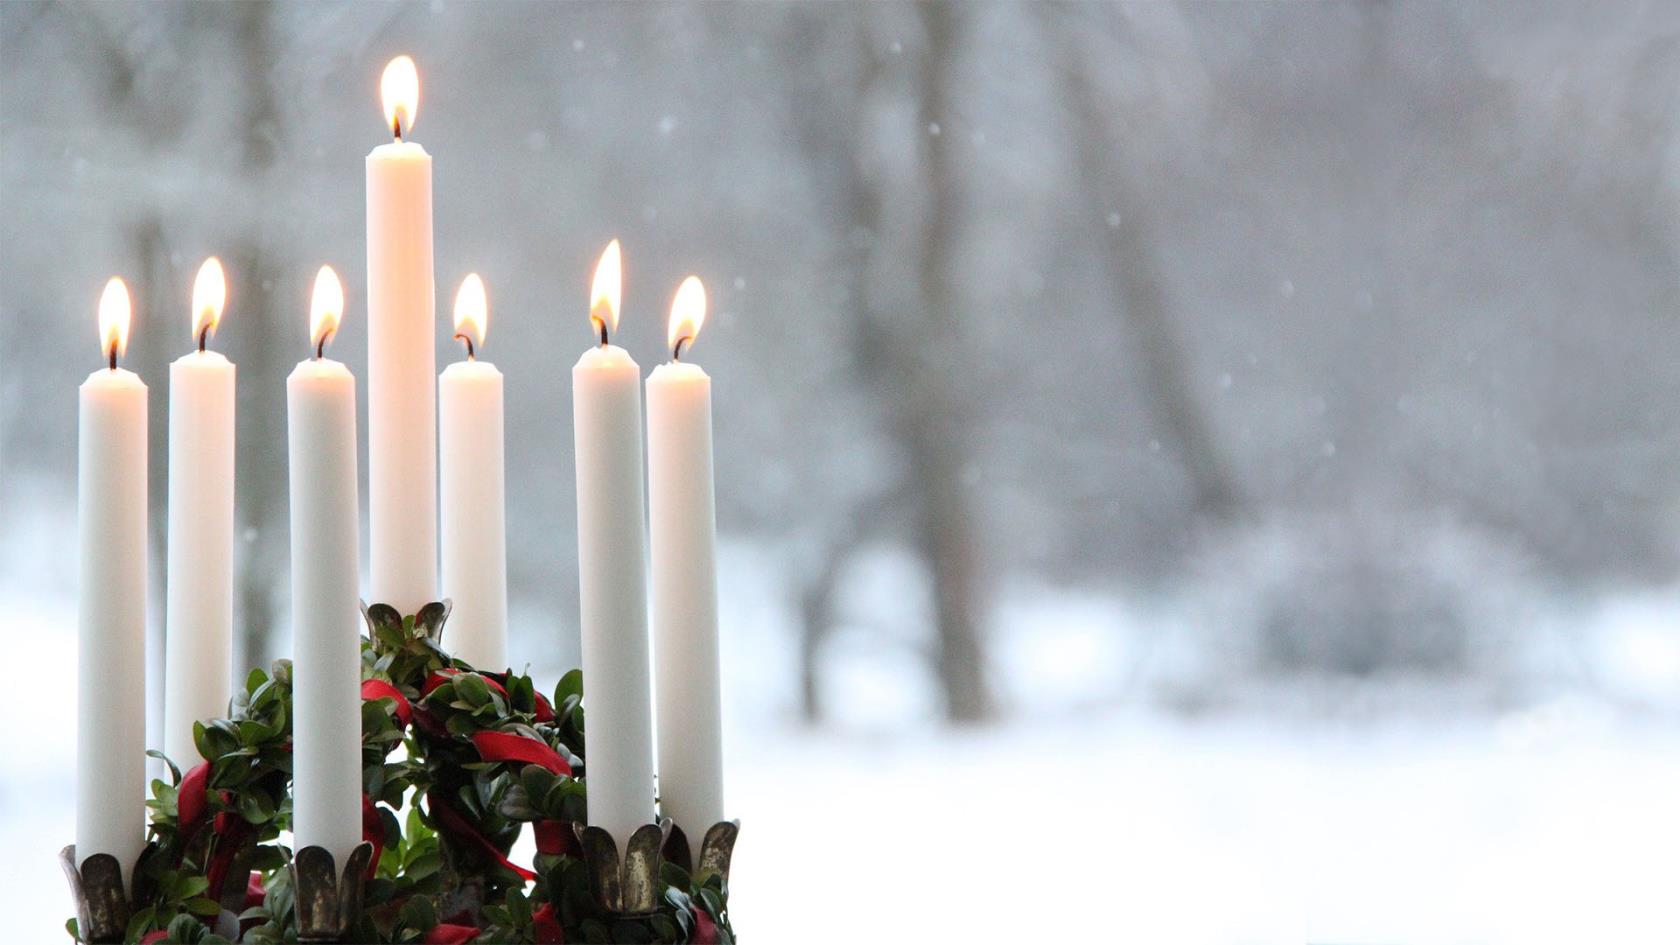 En luciakrona med tända levande ljus står och lyser i snön.